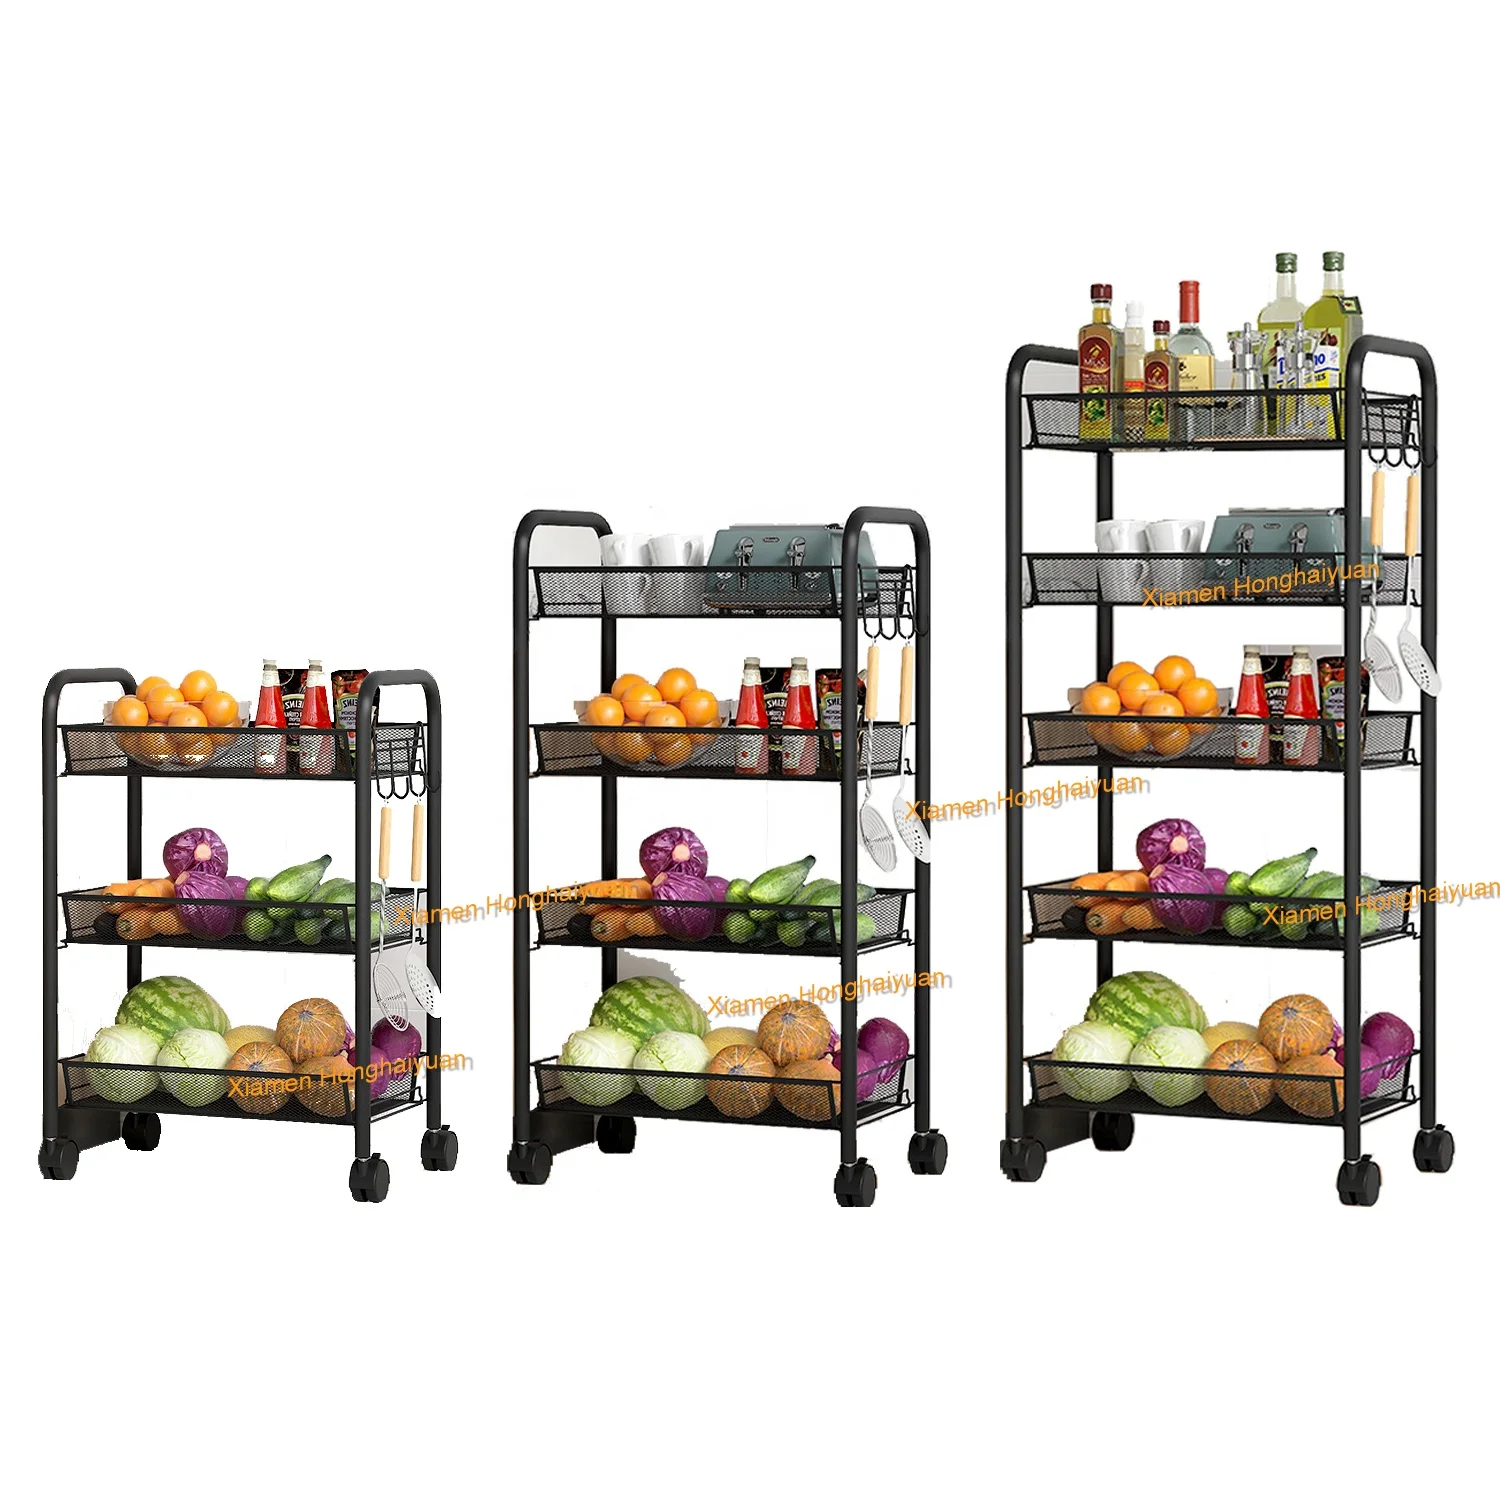 Wholesale 3/4/5 Tier Kitchen Trolley Cart Storage Organizer for the kitchen Other Kitchen Furniture 4 tier kitchen trolley grey 46x26x85 cm iron